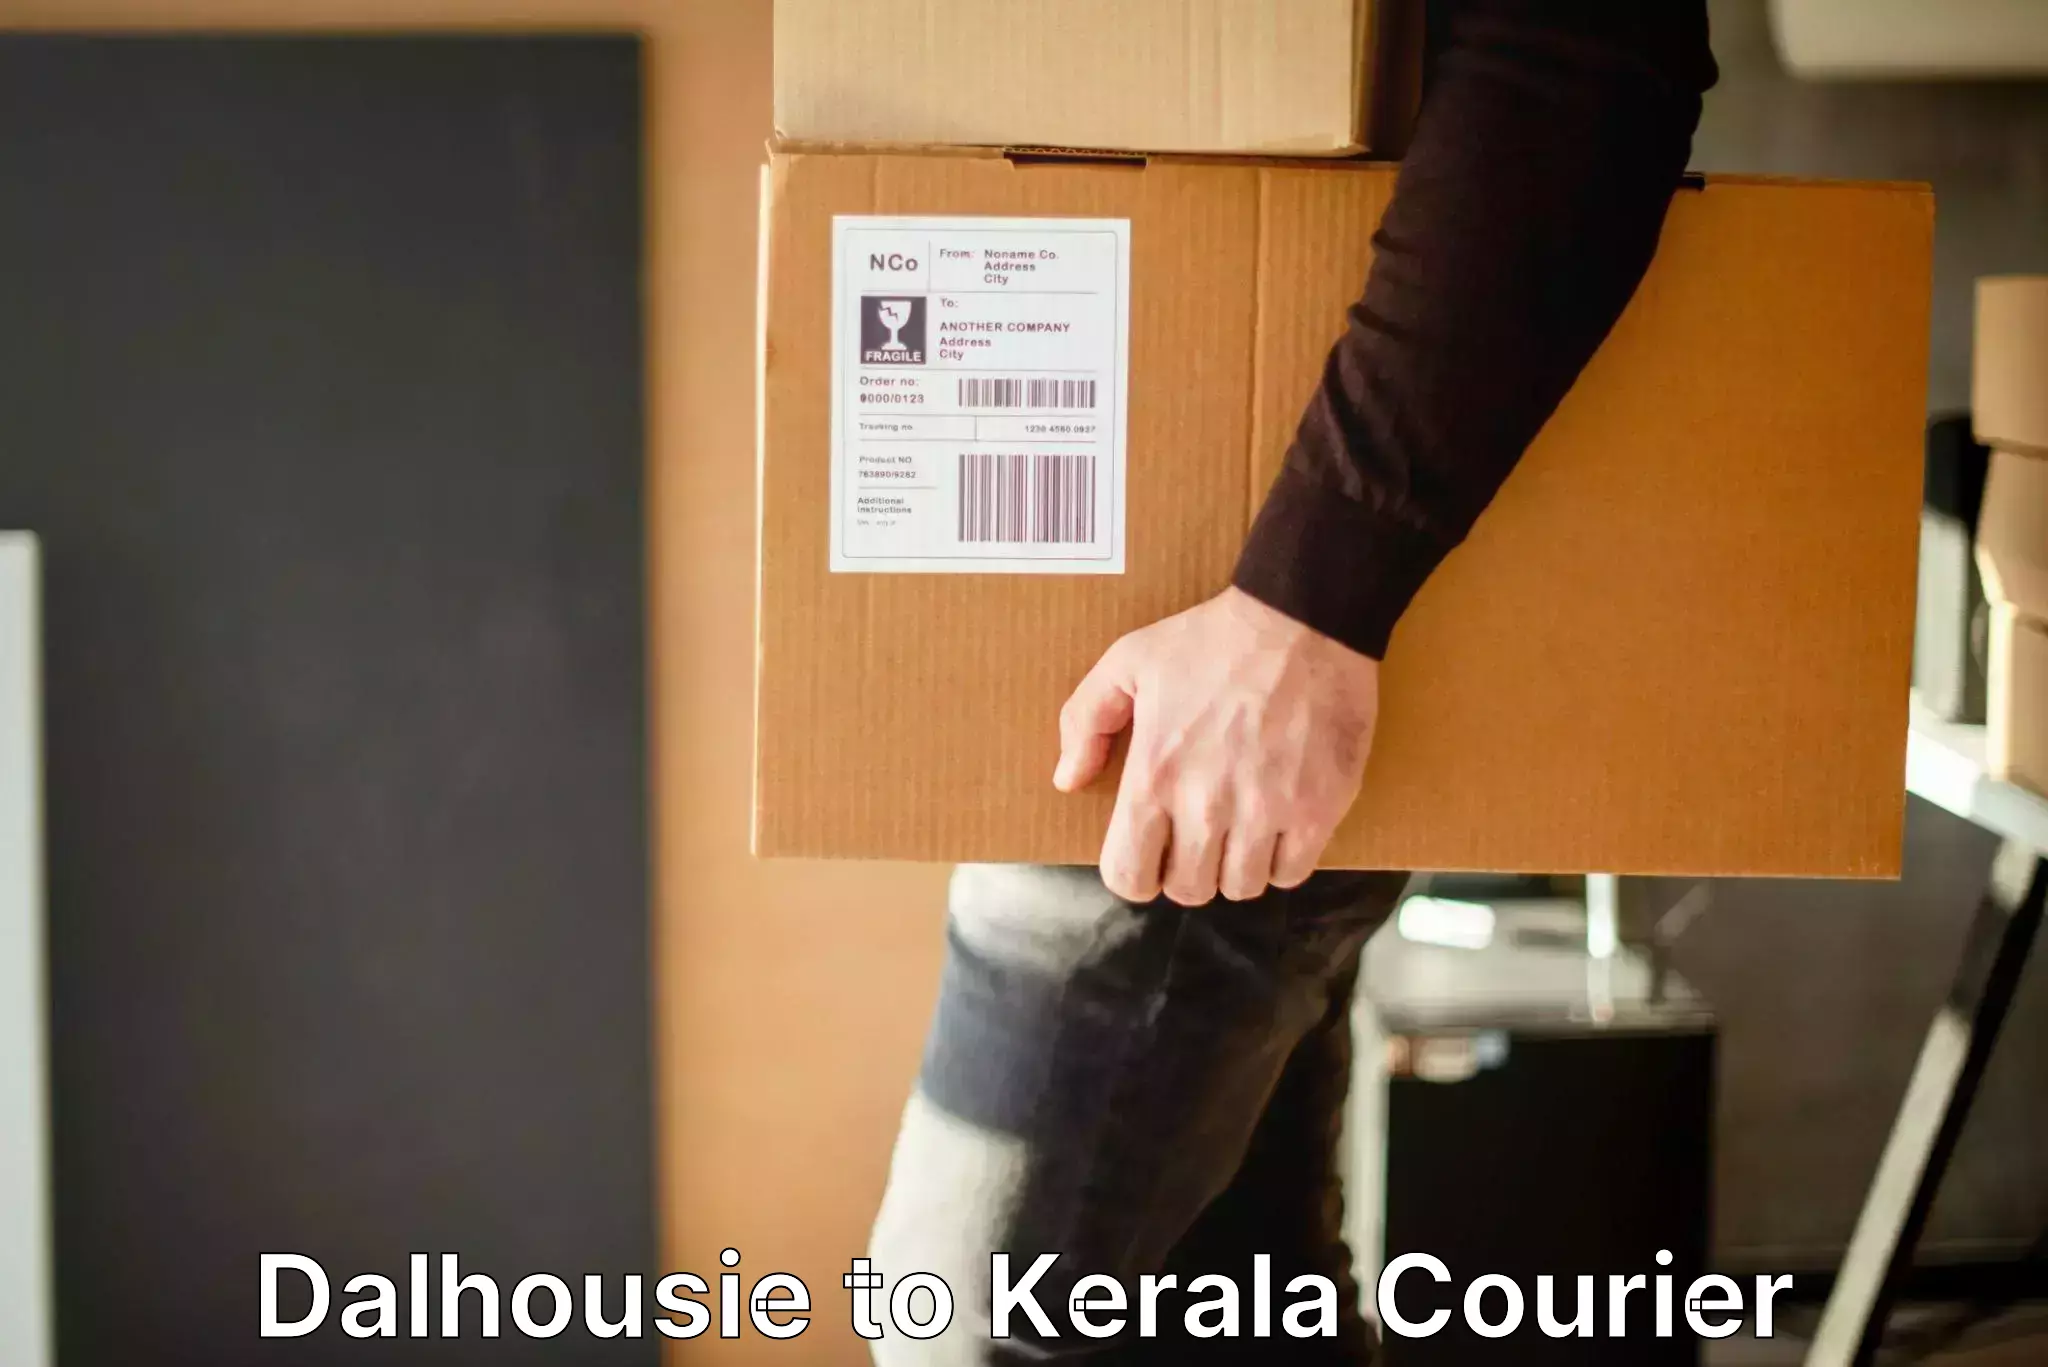 Same day luggage service Dalhousie to Kerala